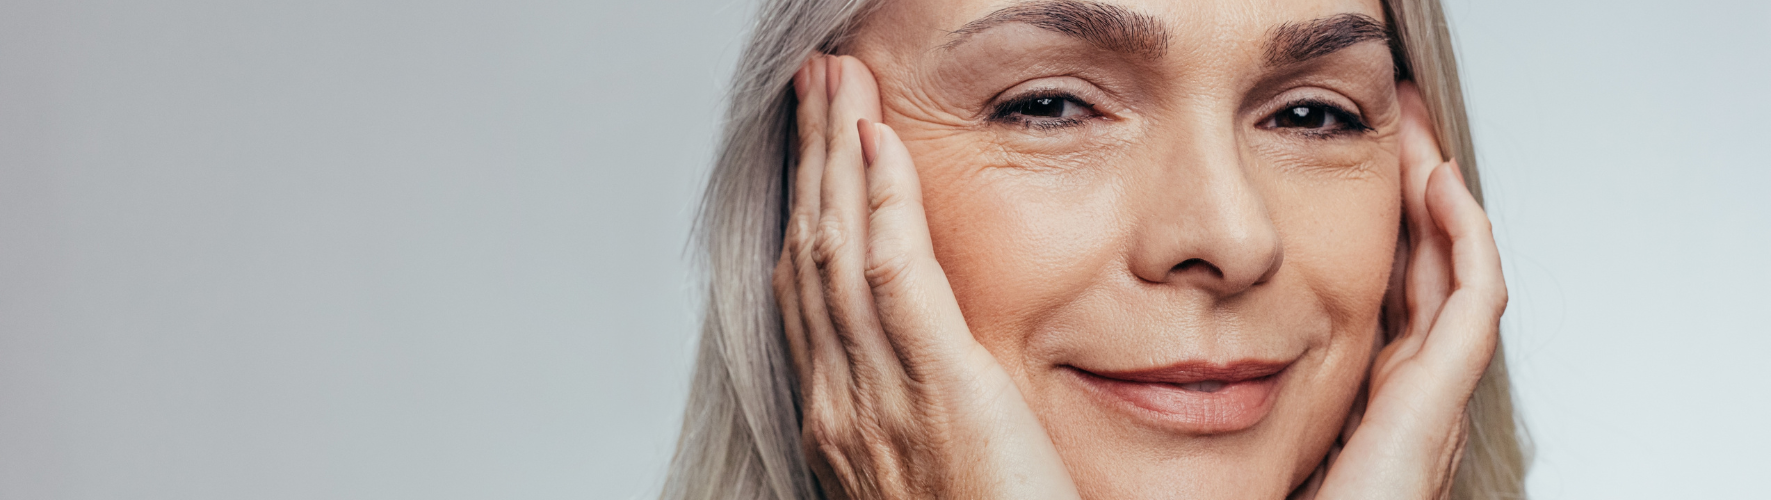 Tør hud med aldringstegn